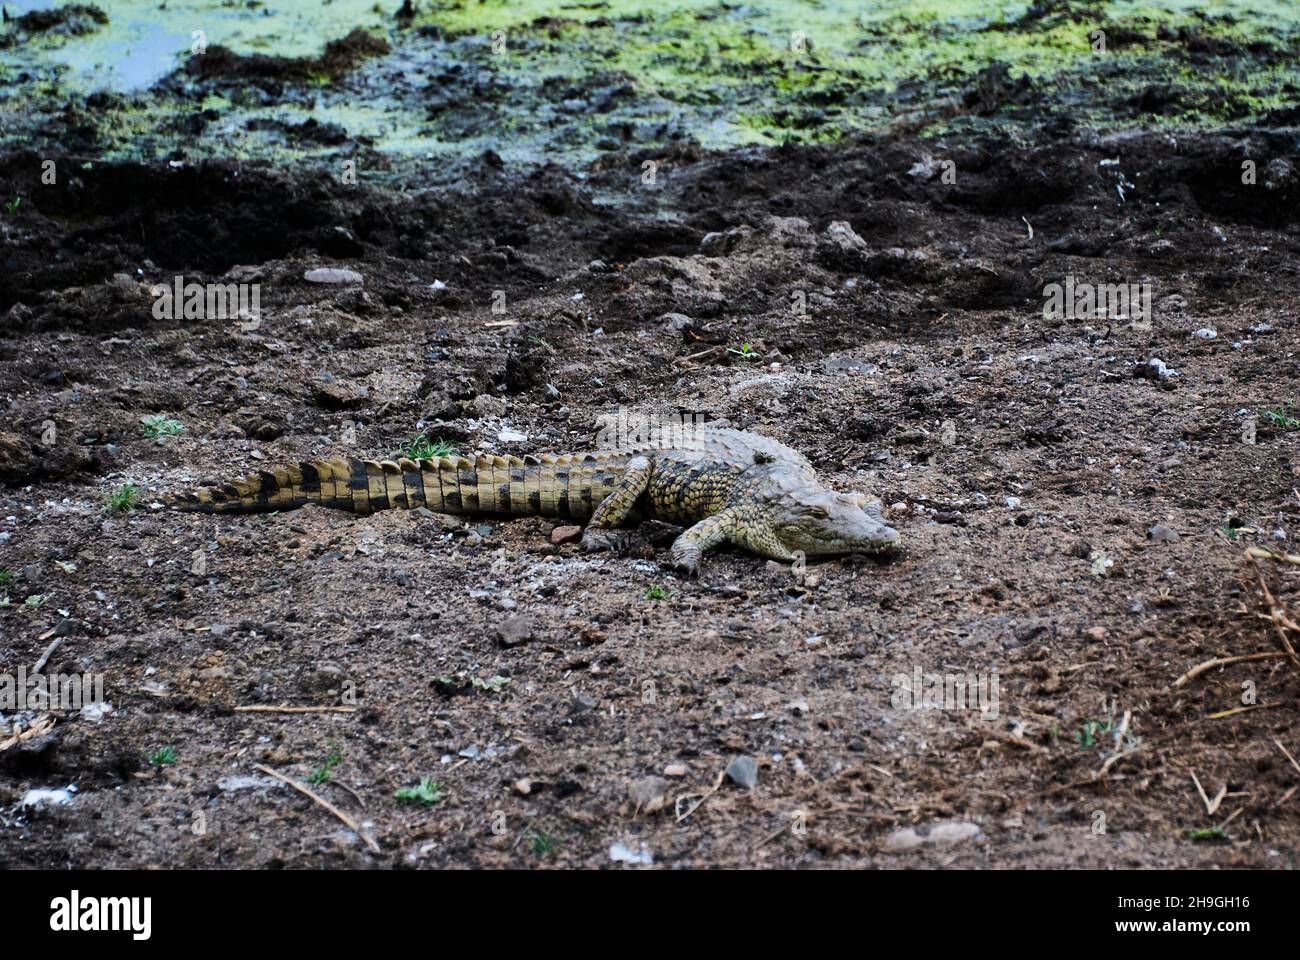 El cocodrilo grande, Crocodylidae, también el cocodrilo verdadero es un reptiles semiacuáticos grandes, que se encuentran en una orilla del río en África Foto de stock